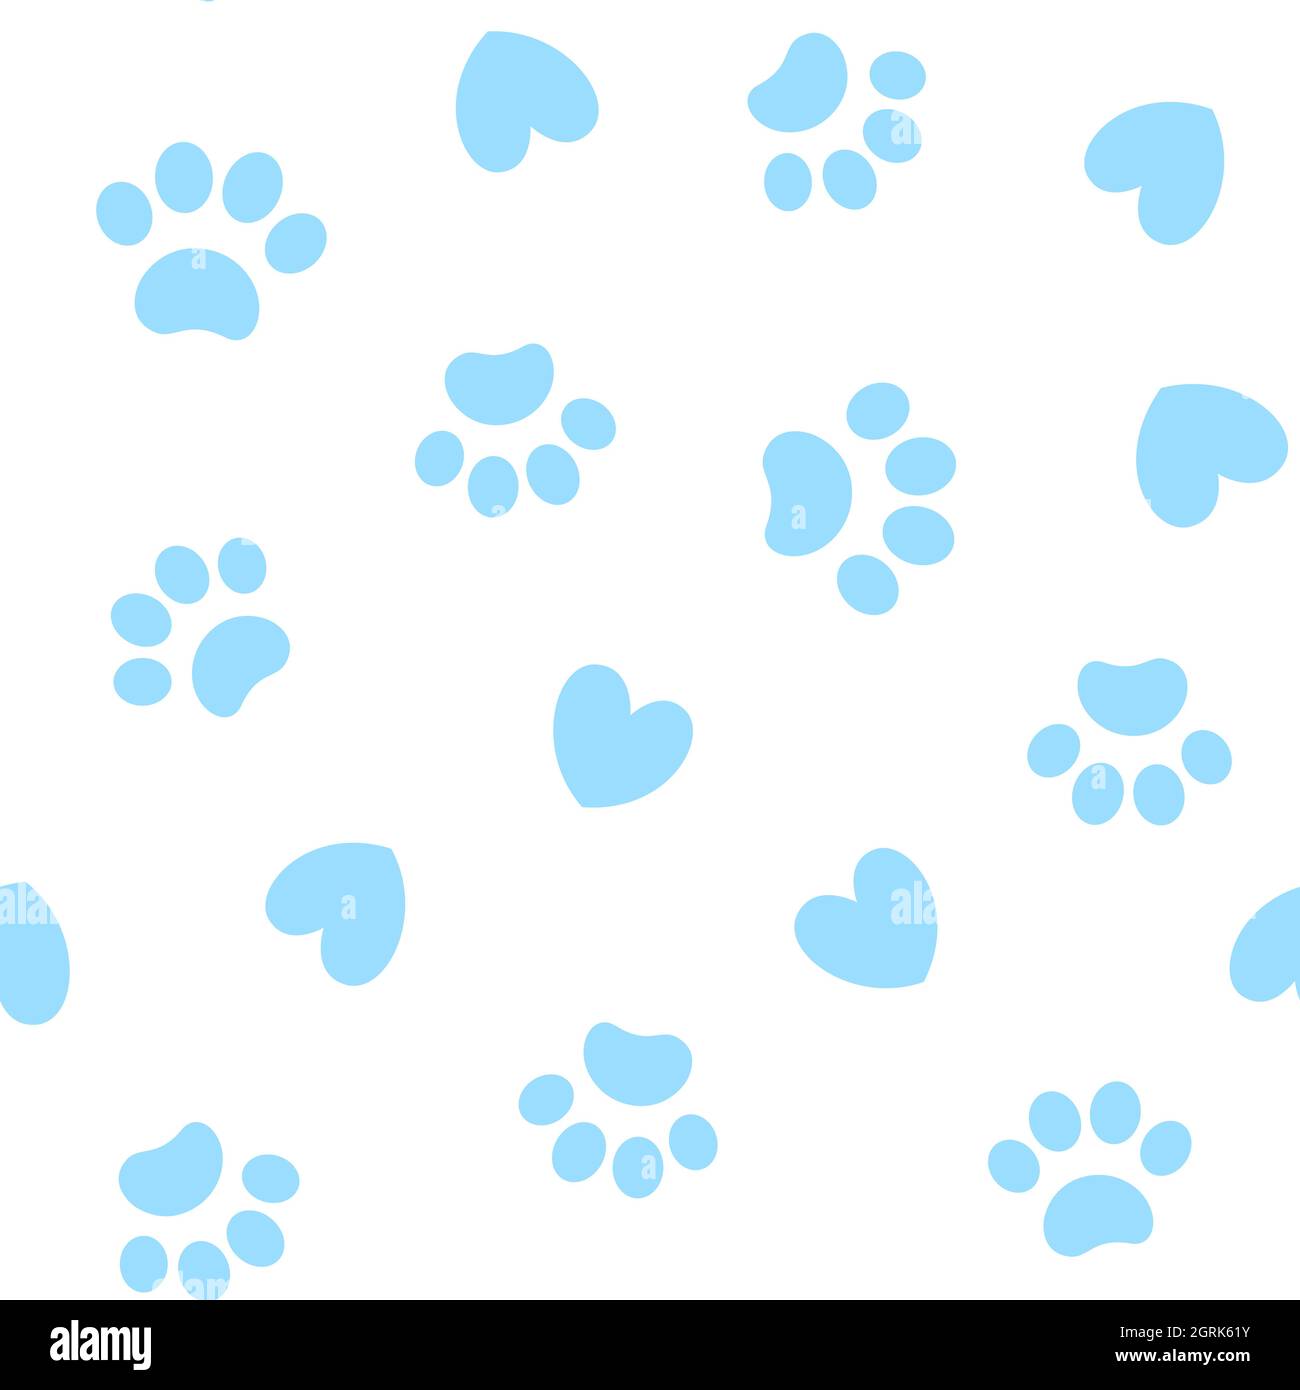 Nahtloser blauer Musterhintergrund mit Pfotenabzügen Tiere und Herzen. Stock Vektor